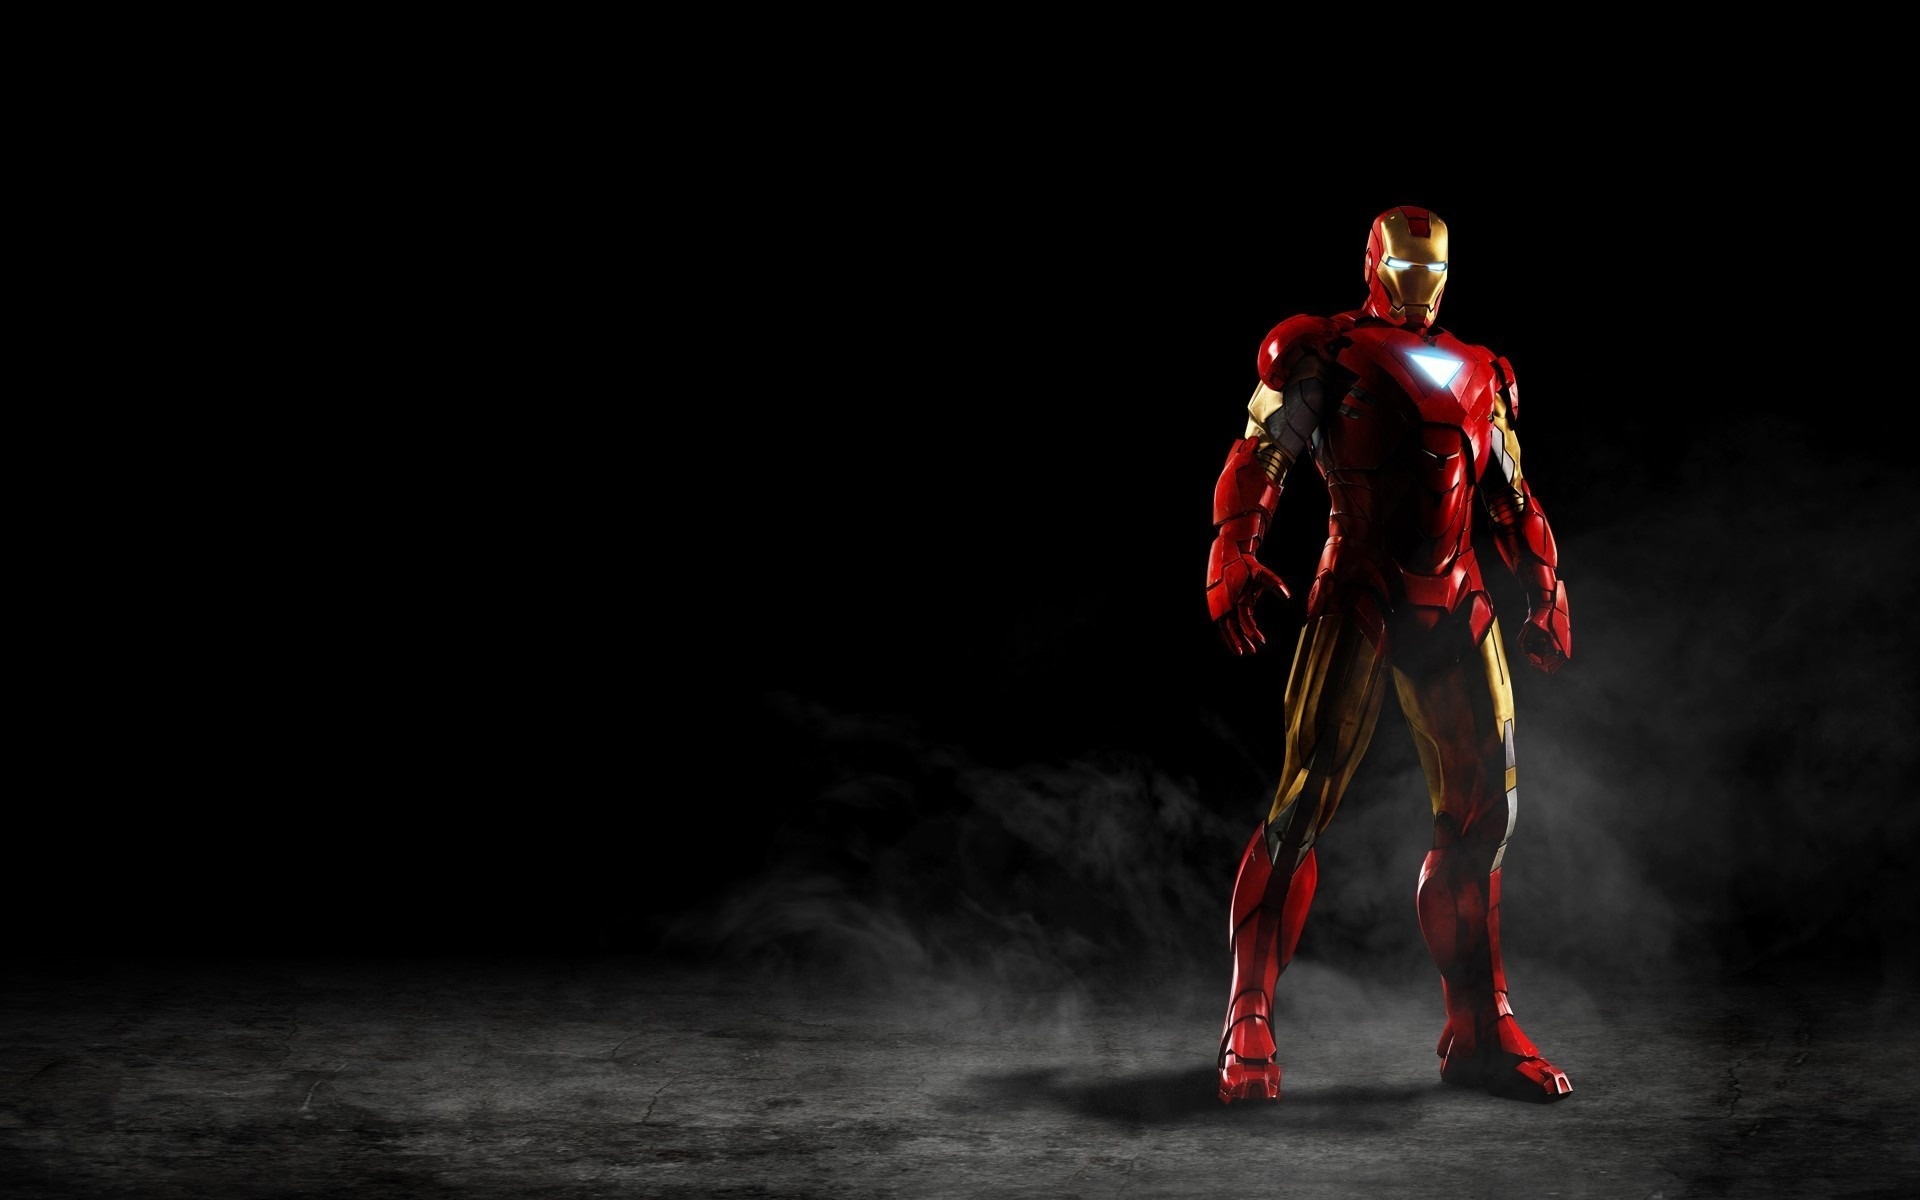 Hình nền Iron Man sẽ cho bạn cảm giác mạnh mẽ và lý tưởng để truyền cảm hứng và quyết tâm cho ngày mới. Hình nền này sẽ mang lại cho bạn một cái nhìn tuyệt đẹp về siêu anh hùng đầy mạnh mẽ của Marvel.